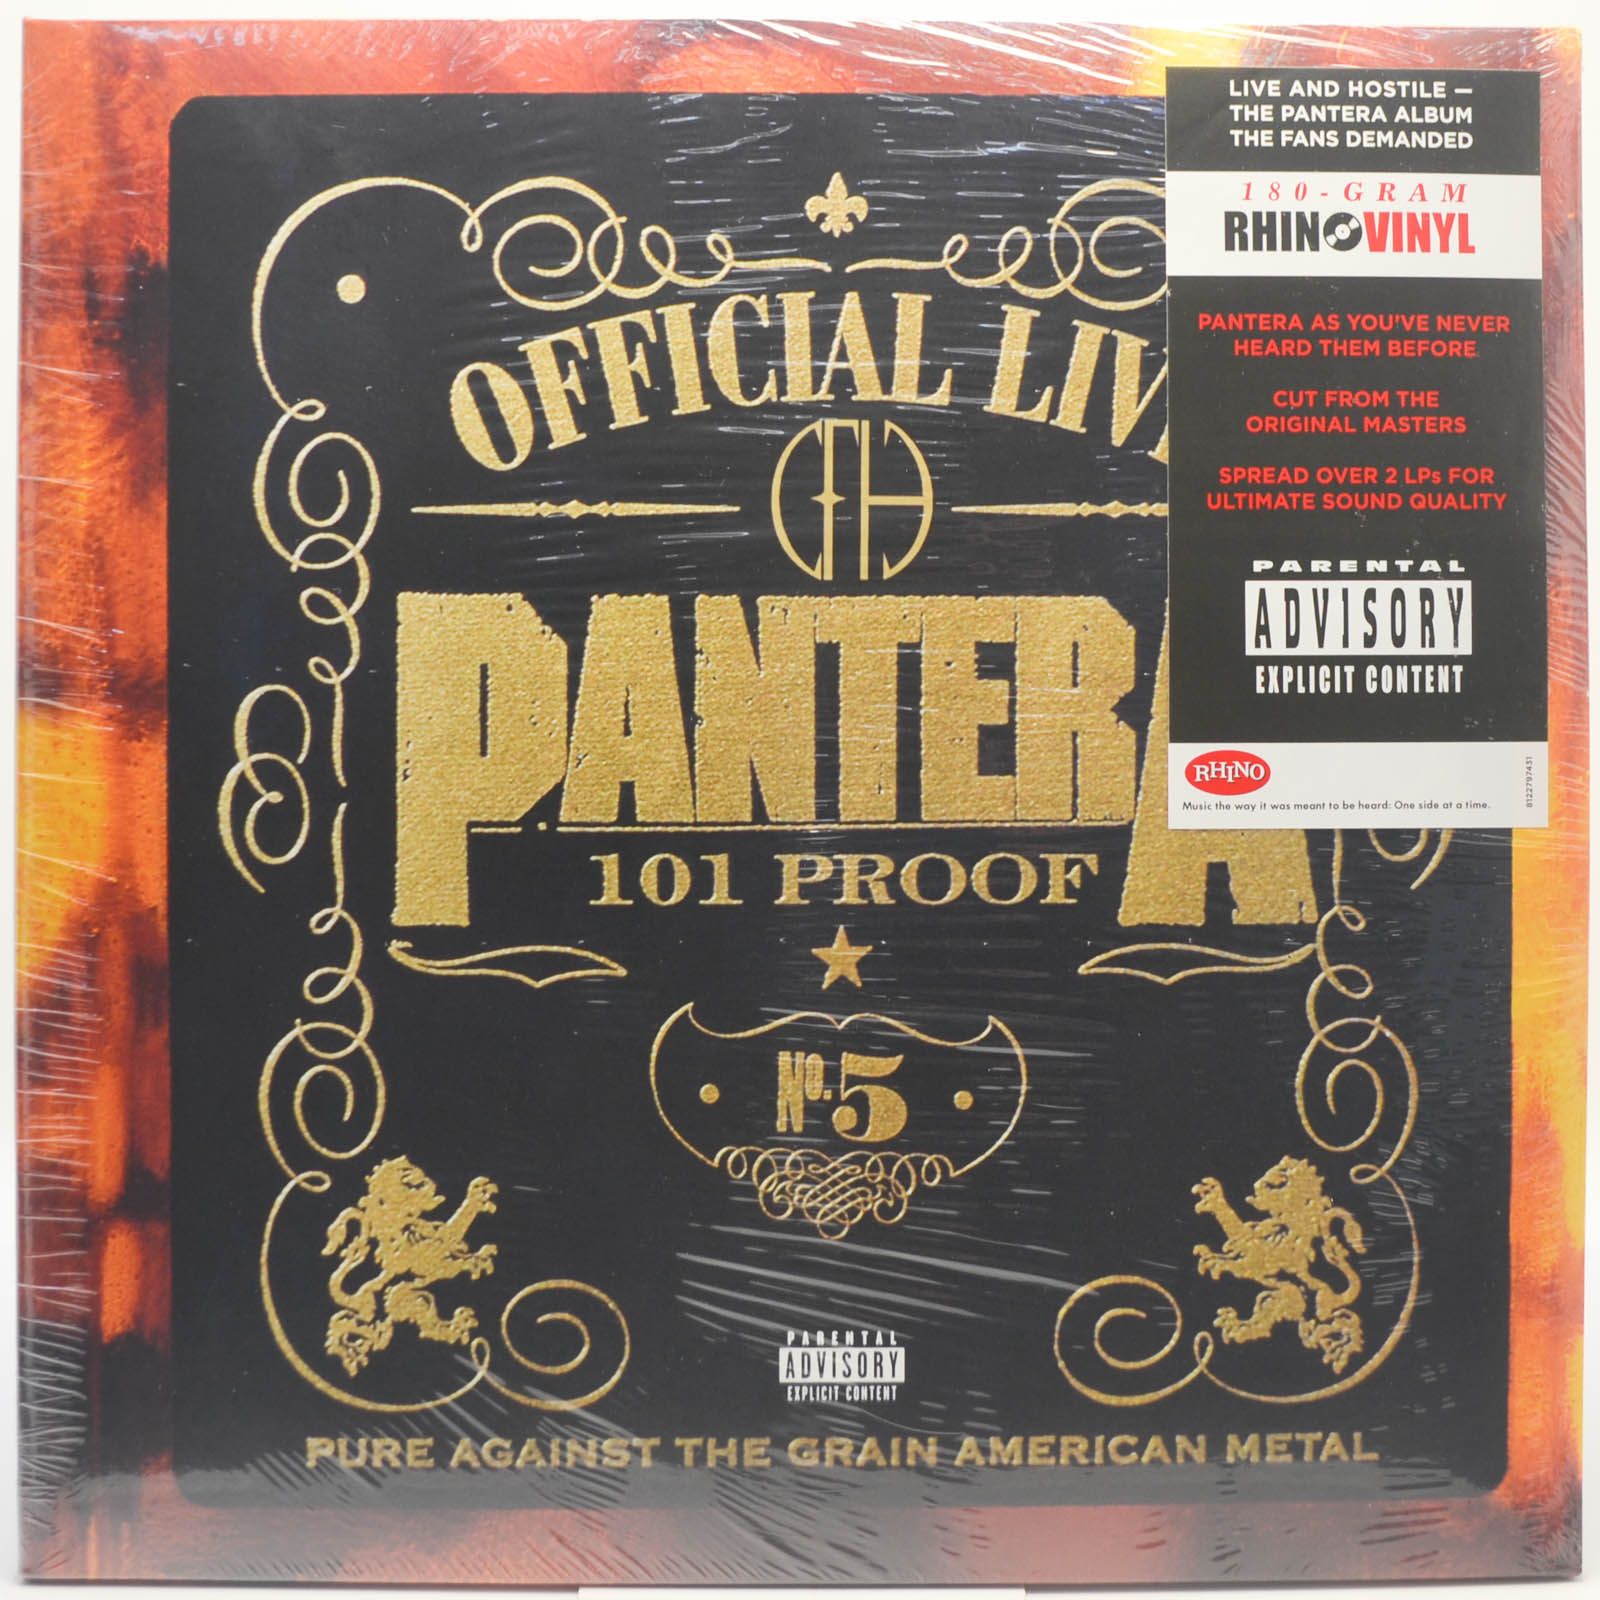 Pantera — Official Live: 101 Proof (2LP), 1997